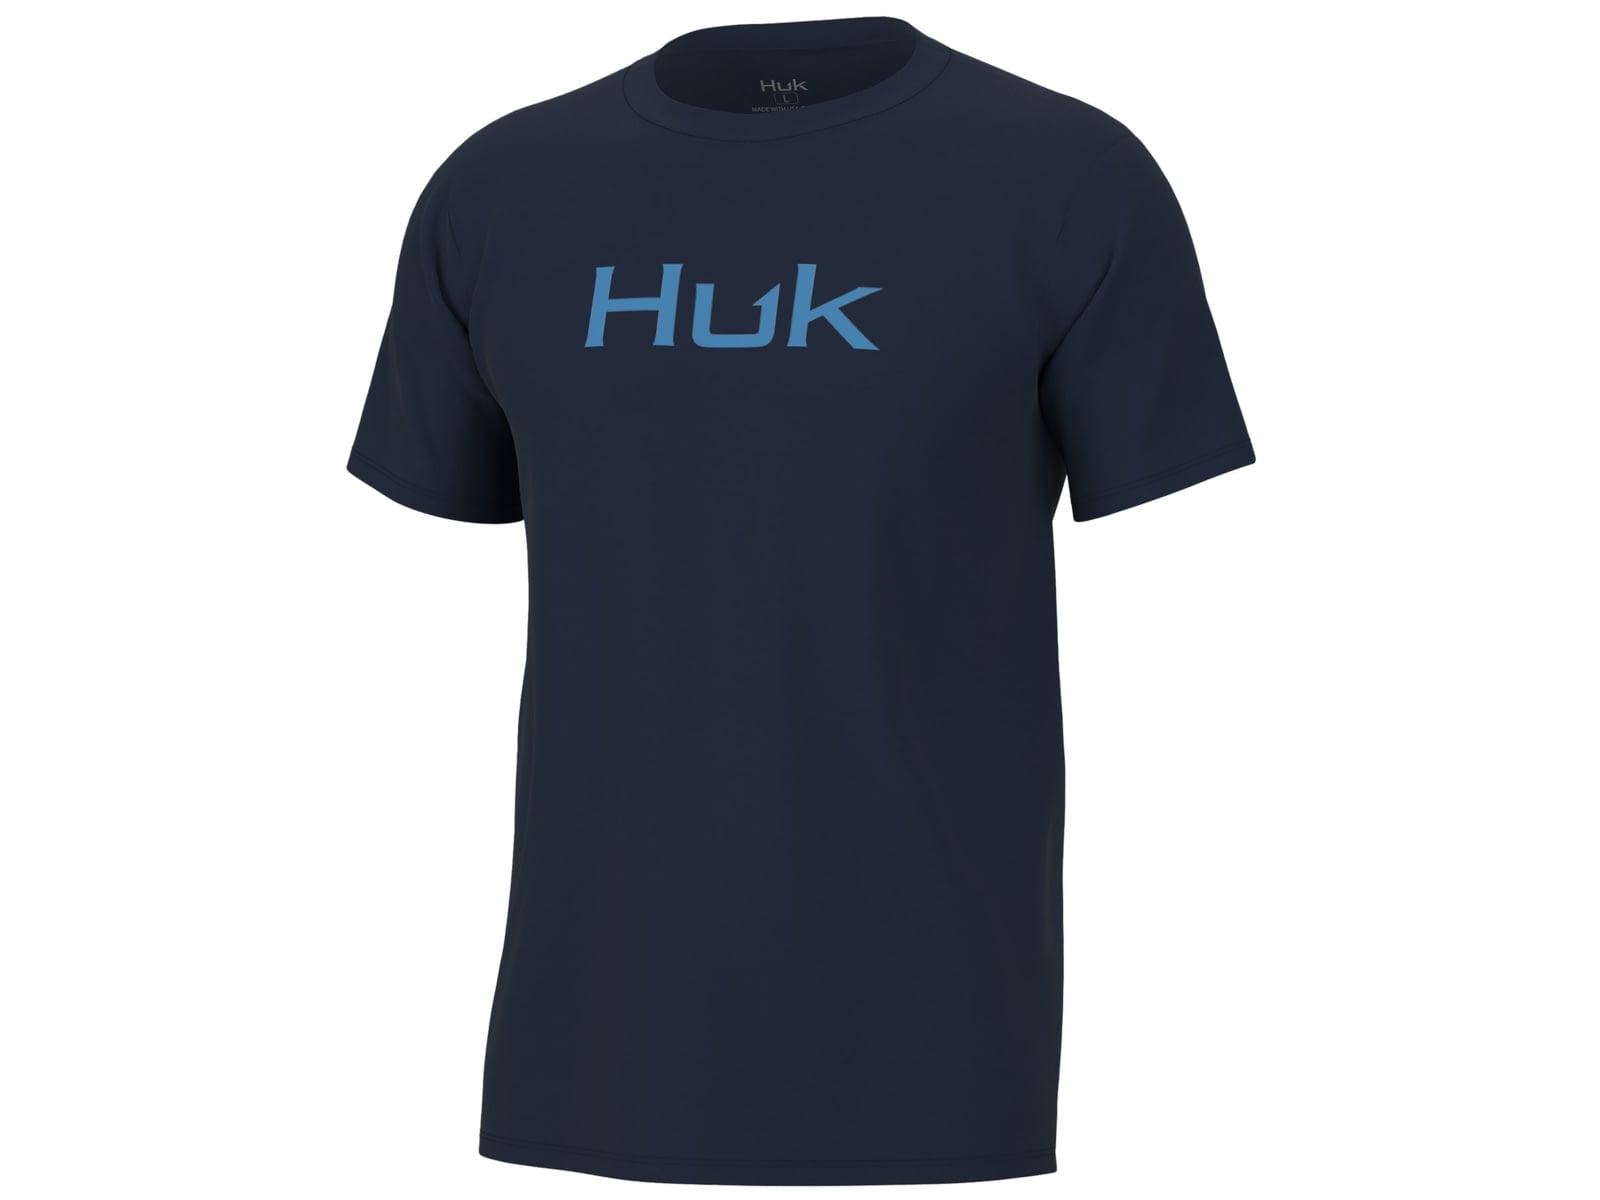 HUK Performance Fishing Huk Logo Tee - Mens, Set Sail, Small 